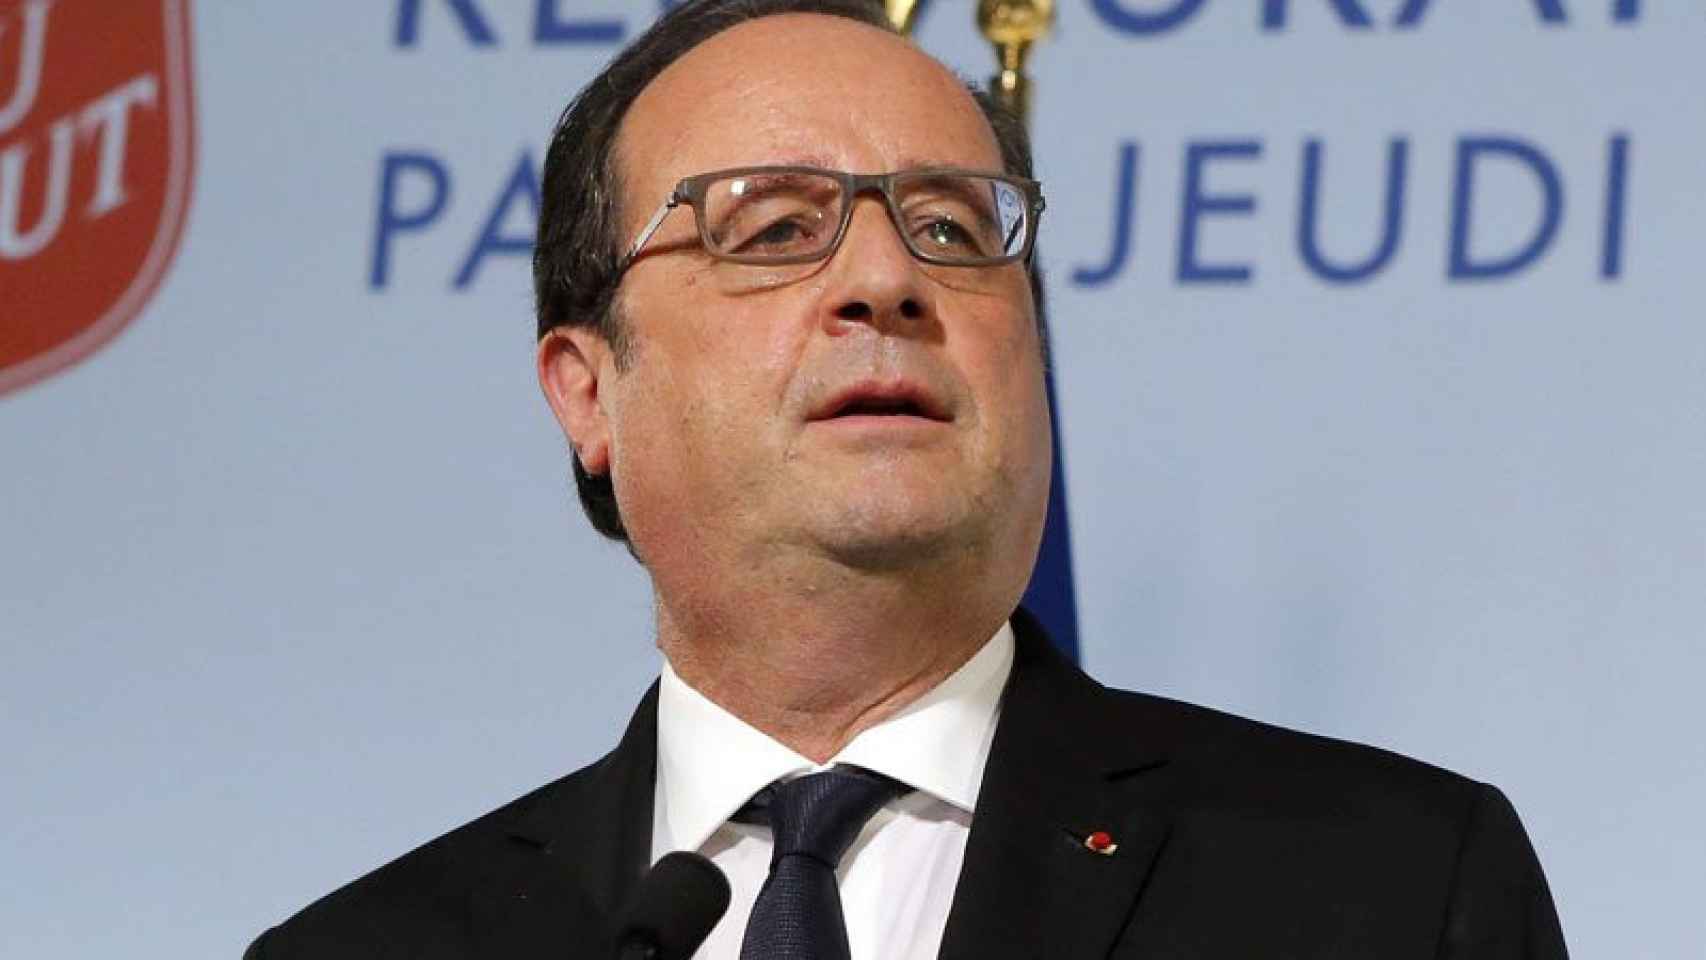 El presidente de Francia, François Hollande, en una imagen de archivo.